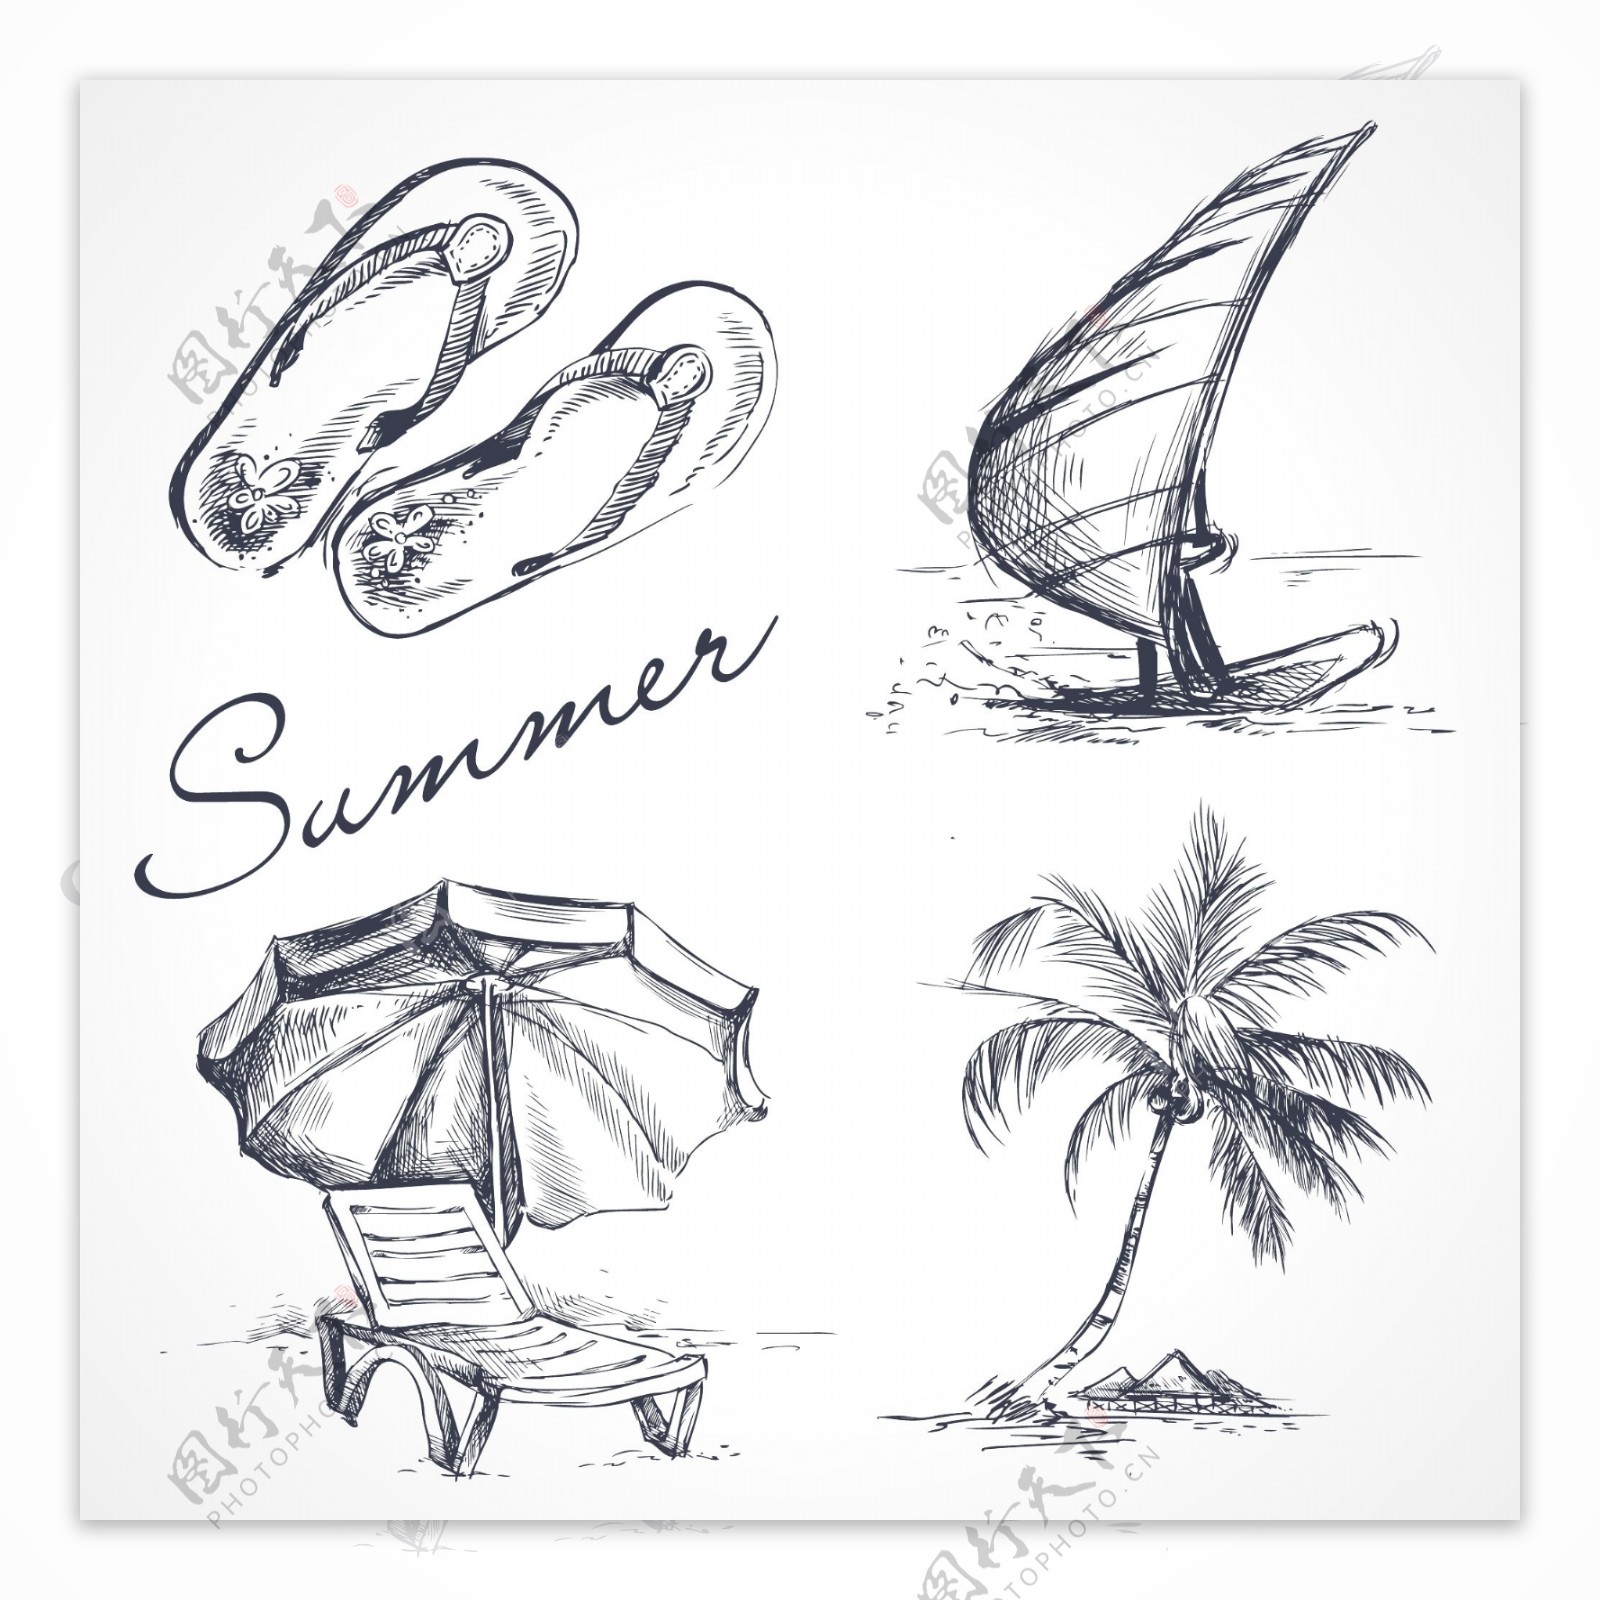 素描手绘夏天度假用品插画